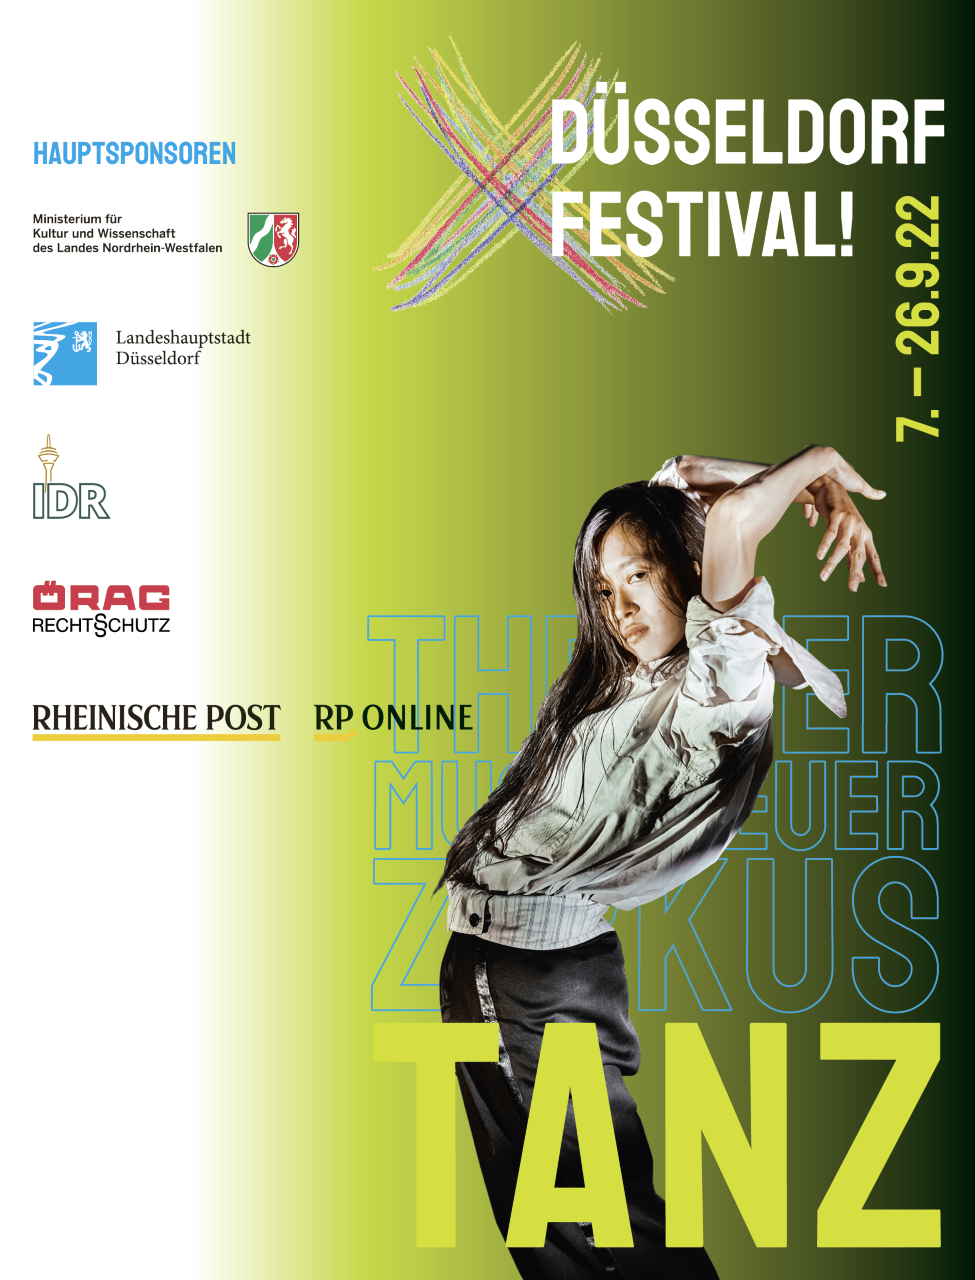 DÜSSELDORF FESTIVAL! 7.9.-26.9.2022 - Die Highlights in aller Kürze / Foto© Düsseldorf Festival